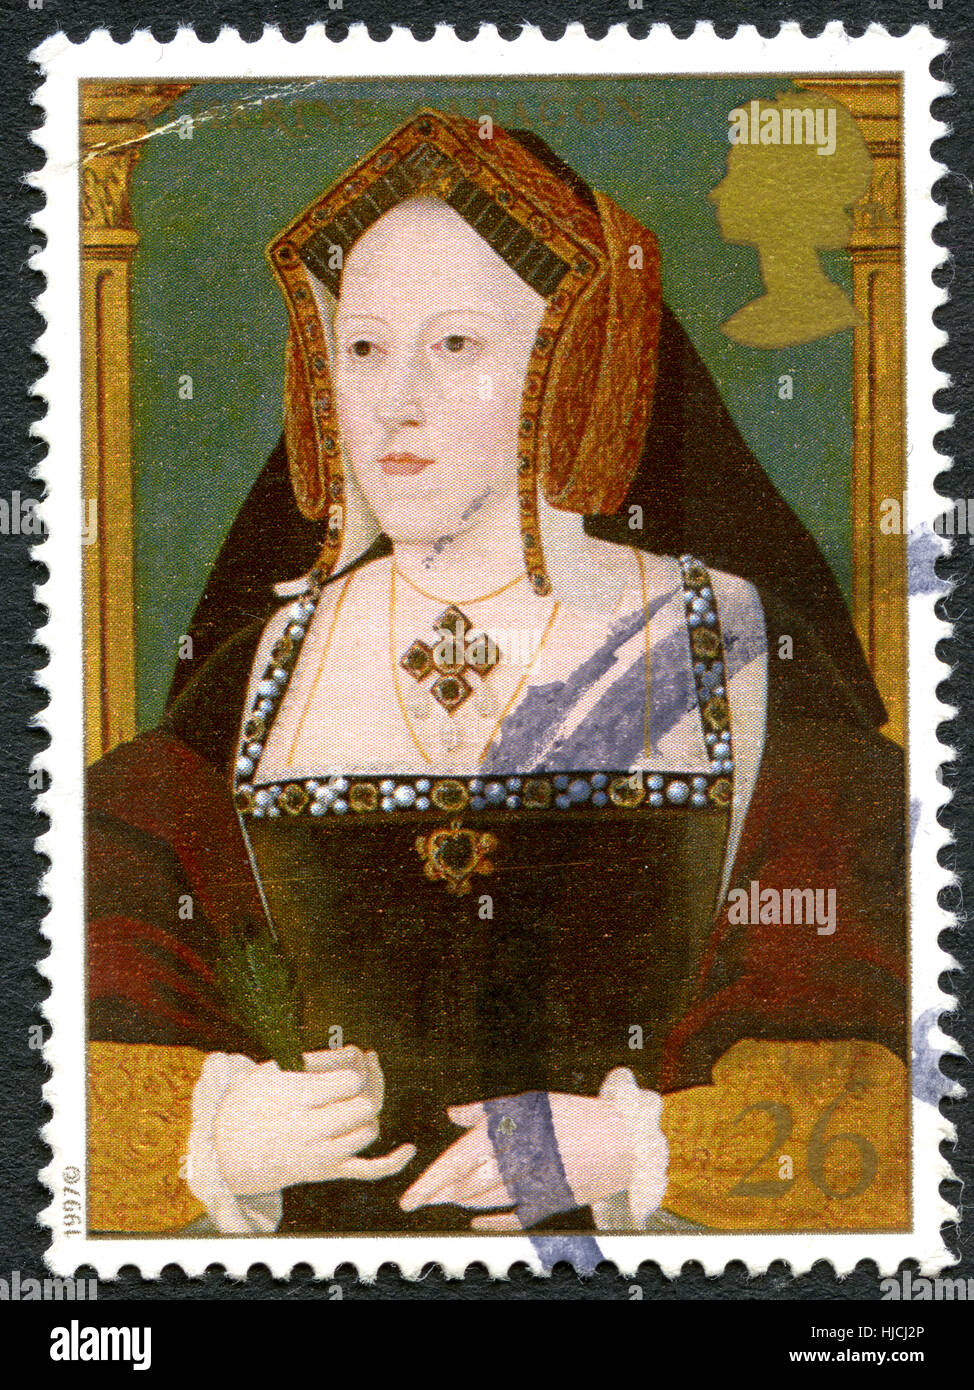 Vereinigtes Königreich - CIRCA 1997: Eine gebrauchte Briefmarke aus dem Vereinigten Königreich, Darstellung zur Veranschaulichung der Katharina von Aragón, die erste Gemahlin von König Henry VIII, ci Stockfoto